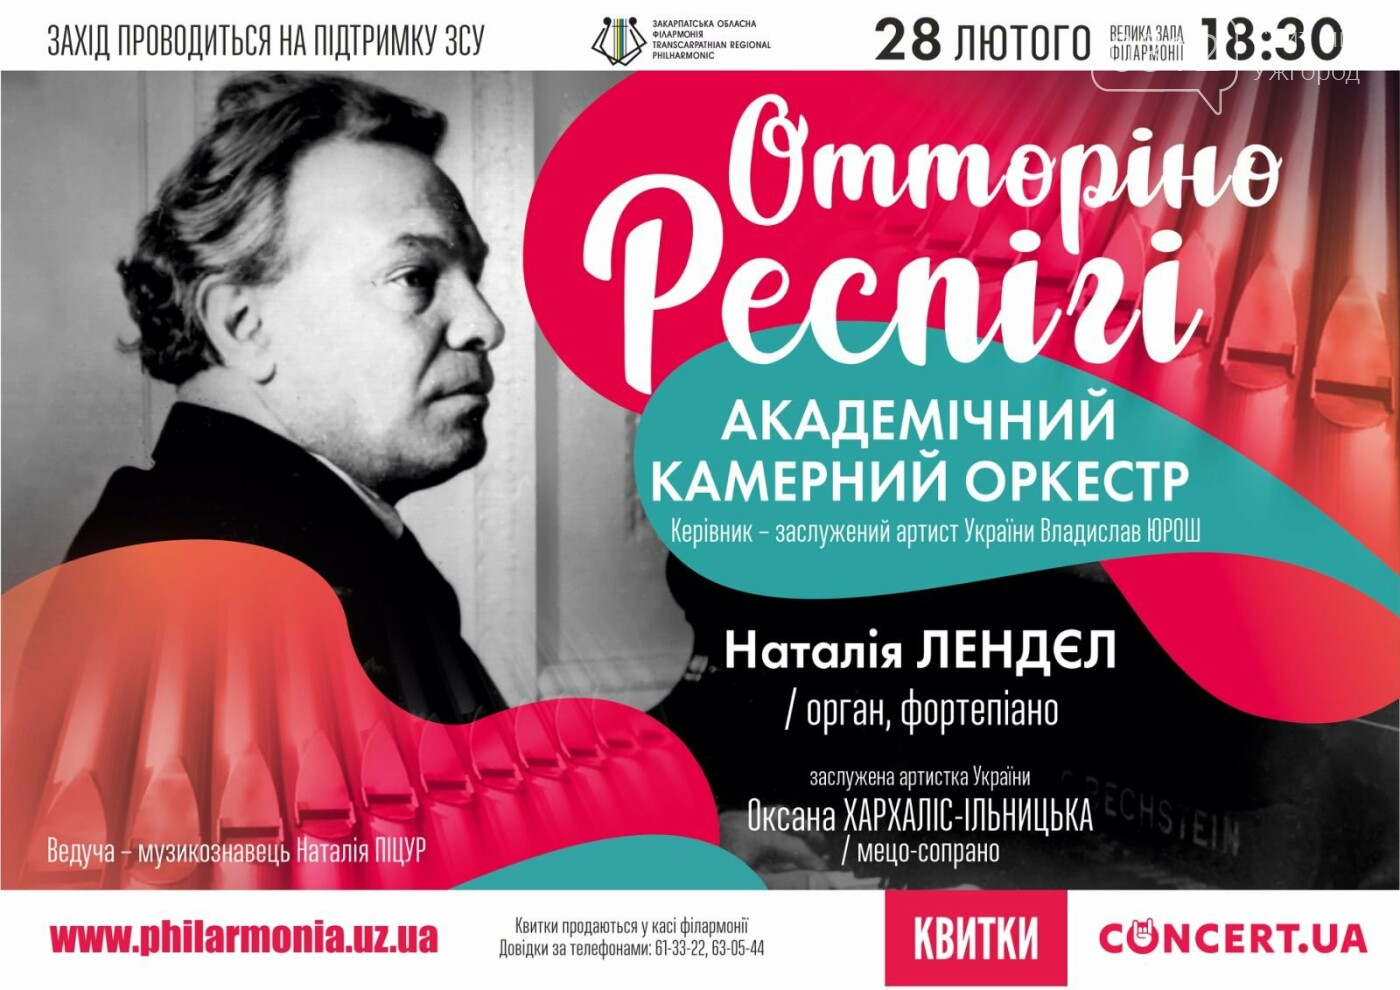 Закарпатська філармонія запрошує на концерт з творів Оторіно Респігі